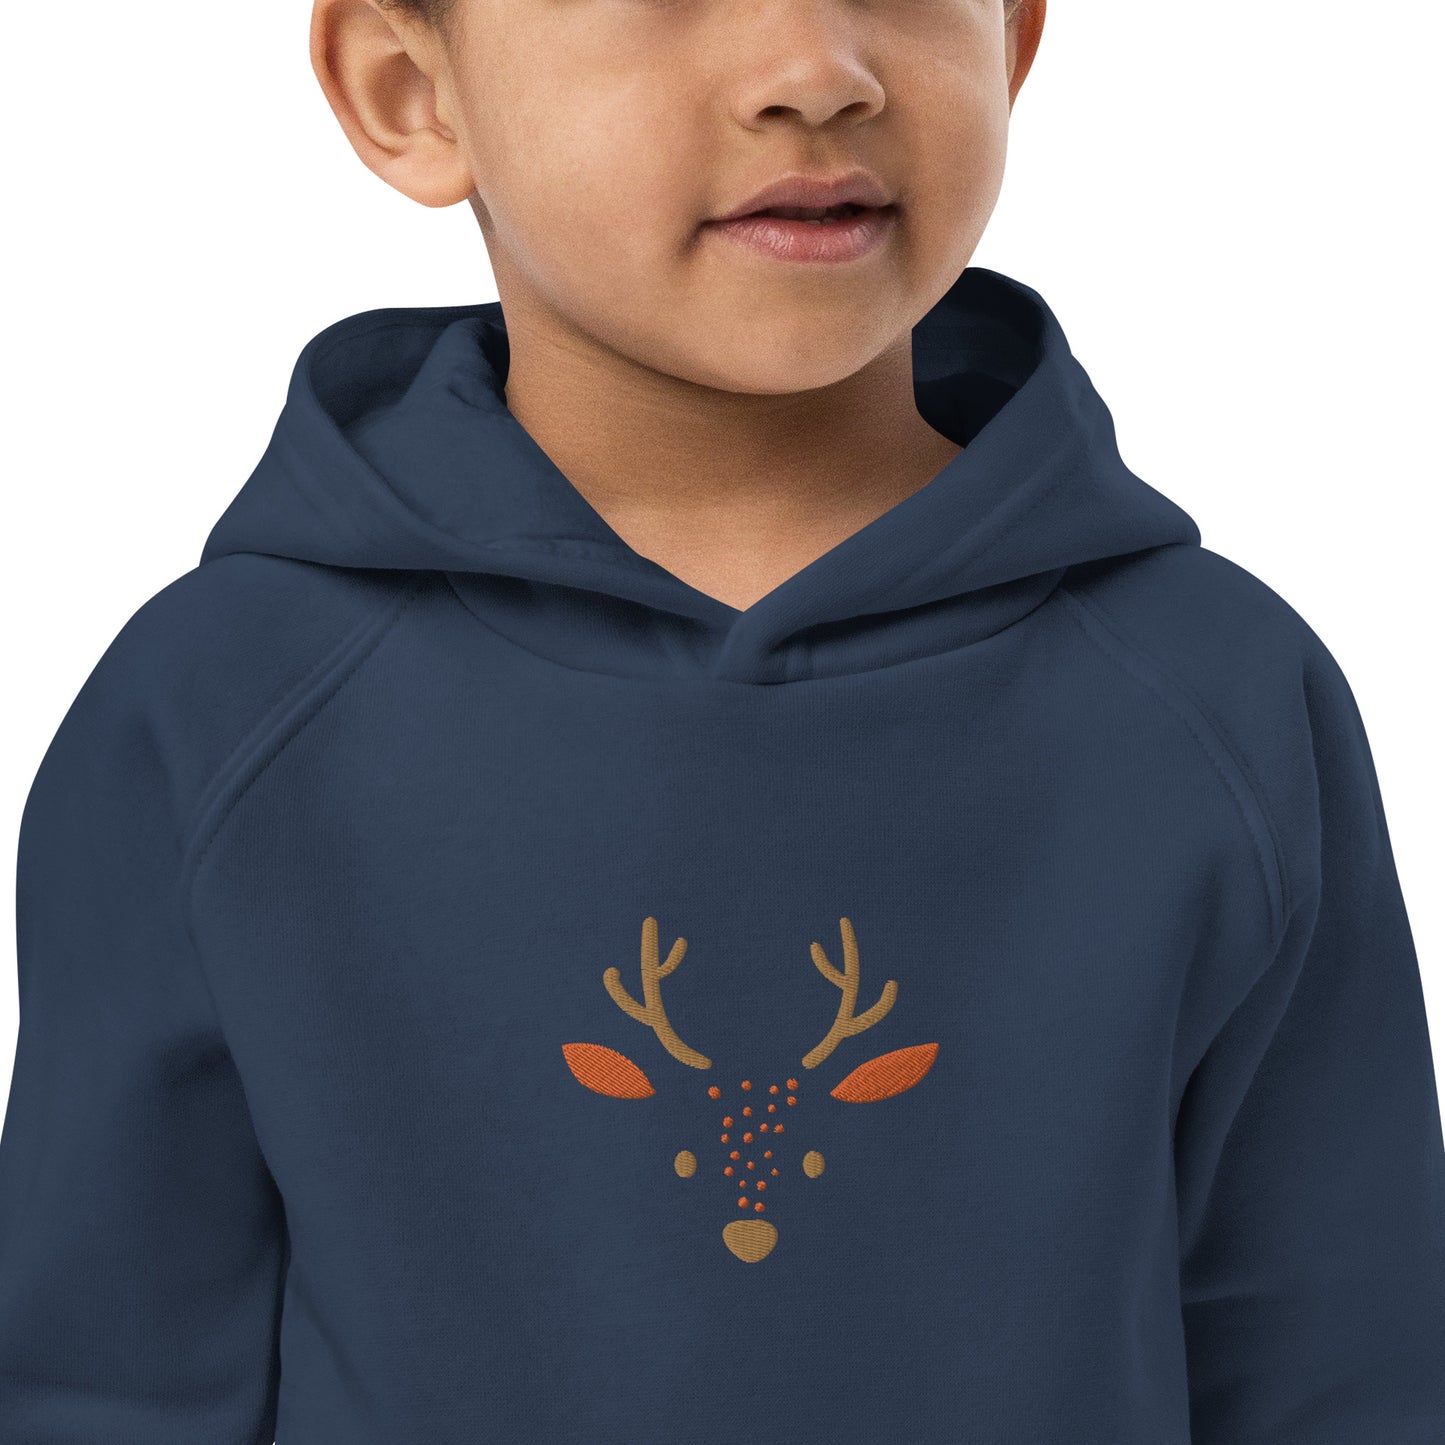 Deer 2 Kids Eco Hoodie avec des animaux mignons, pull en coton biologique pour enfants, idée cadeau pour les enfants, sweat à capuche doux pour les enfants pour Noël